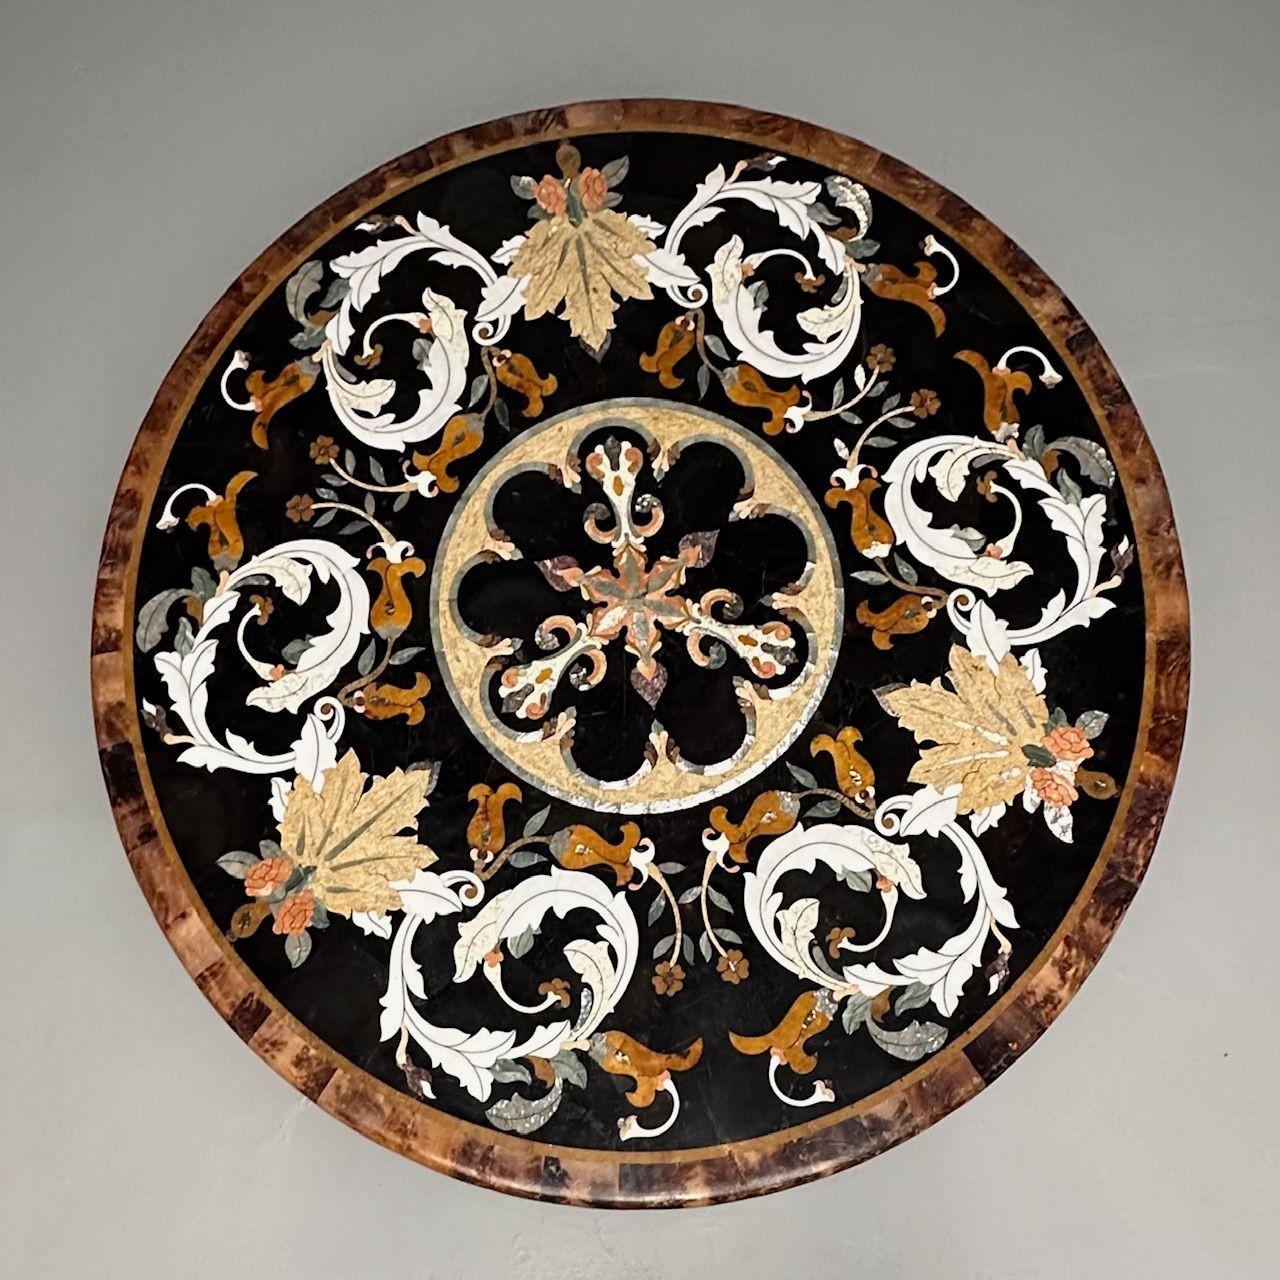 Pietra Dura, Italienische moderne runde Tischplatte aus der Mitte des Jahrhunderts, Marmor, Perlmutt

Runde Marmortischplatte mit komplizierten Mikromosaikdetails. Ein feines Detail für einen Ess-, Karten- oder Mitteltisch für ein Foyer. Die gesamte